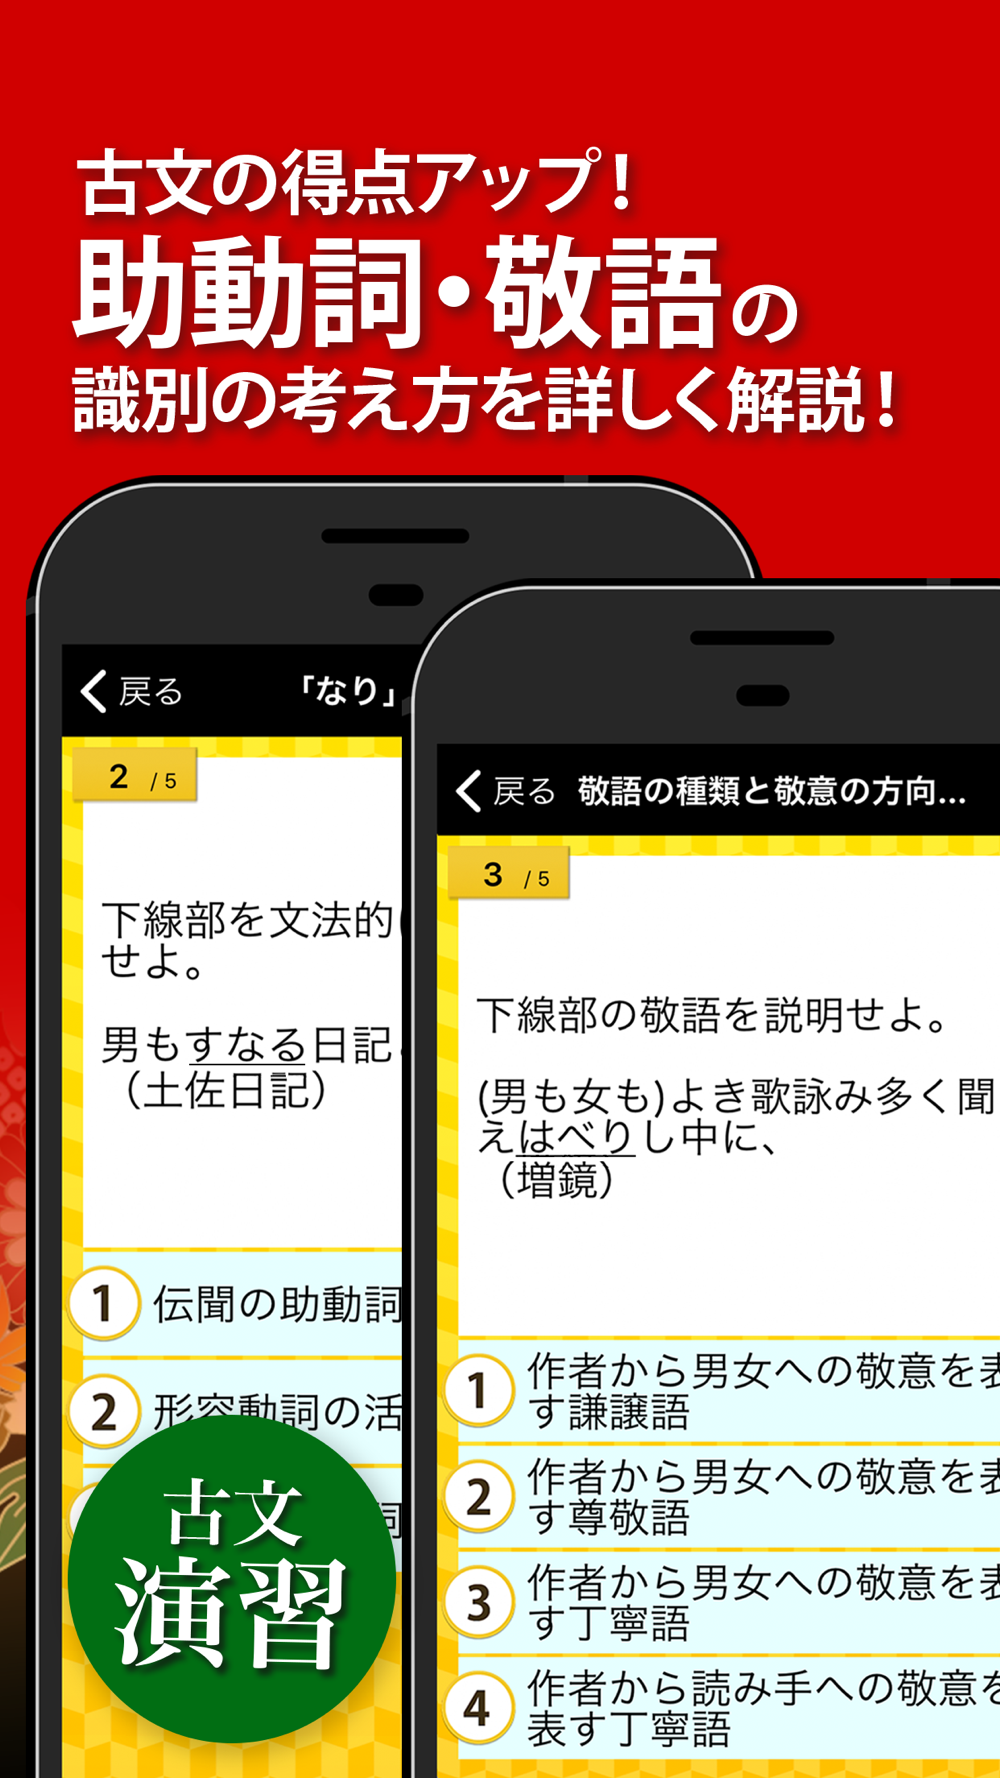 古文 漢文 古文単語 古典文法 漢文 Free Download App For Iphone Steprimo Com